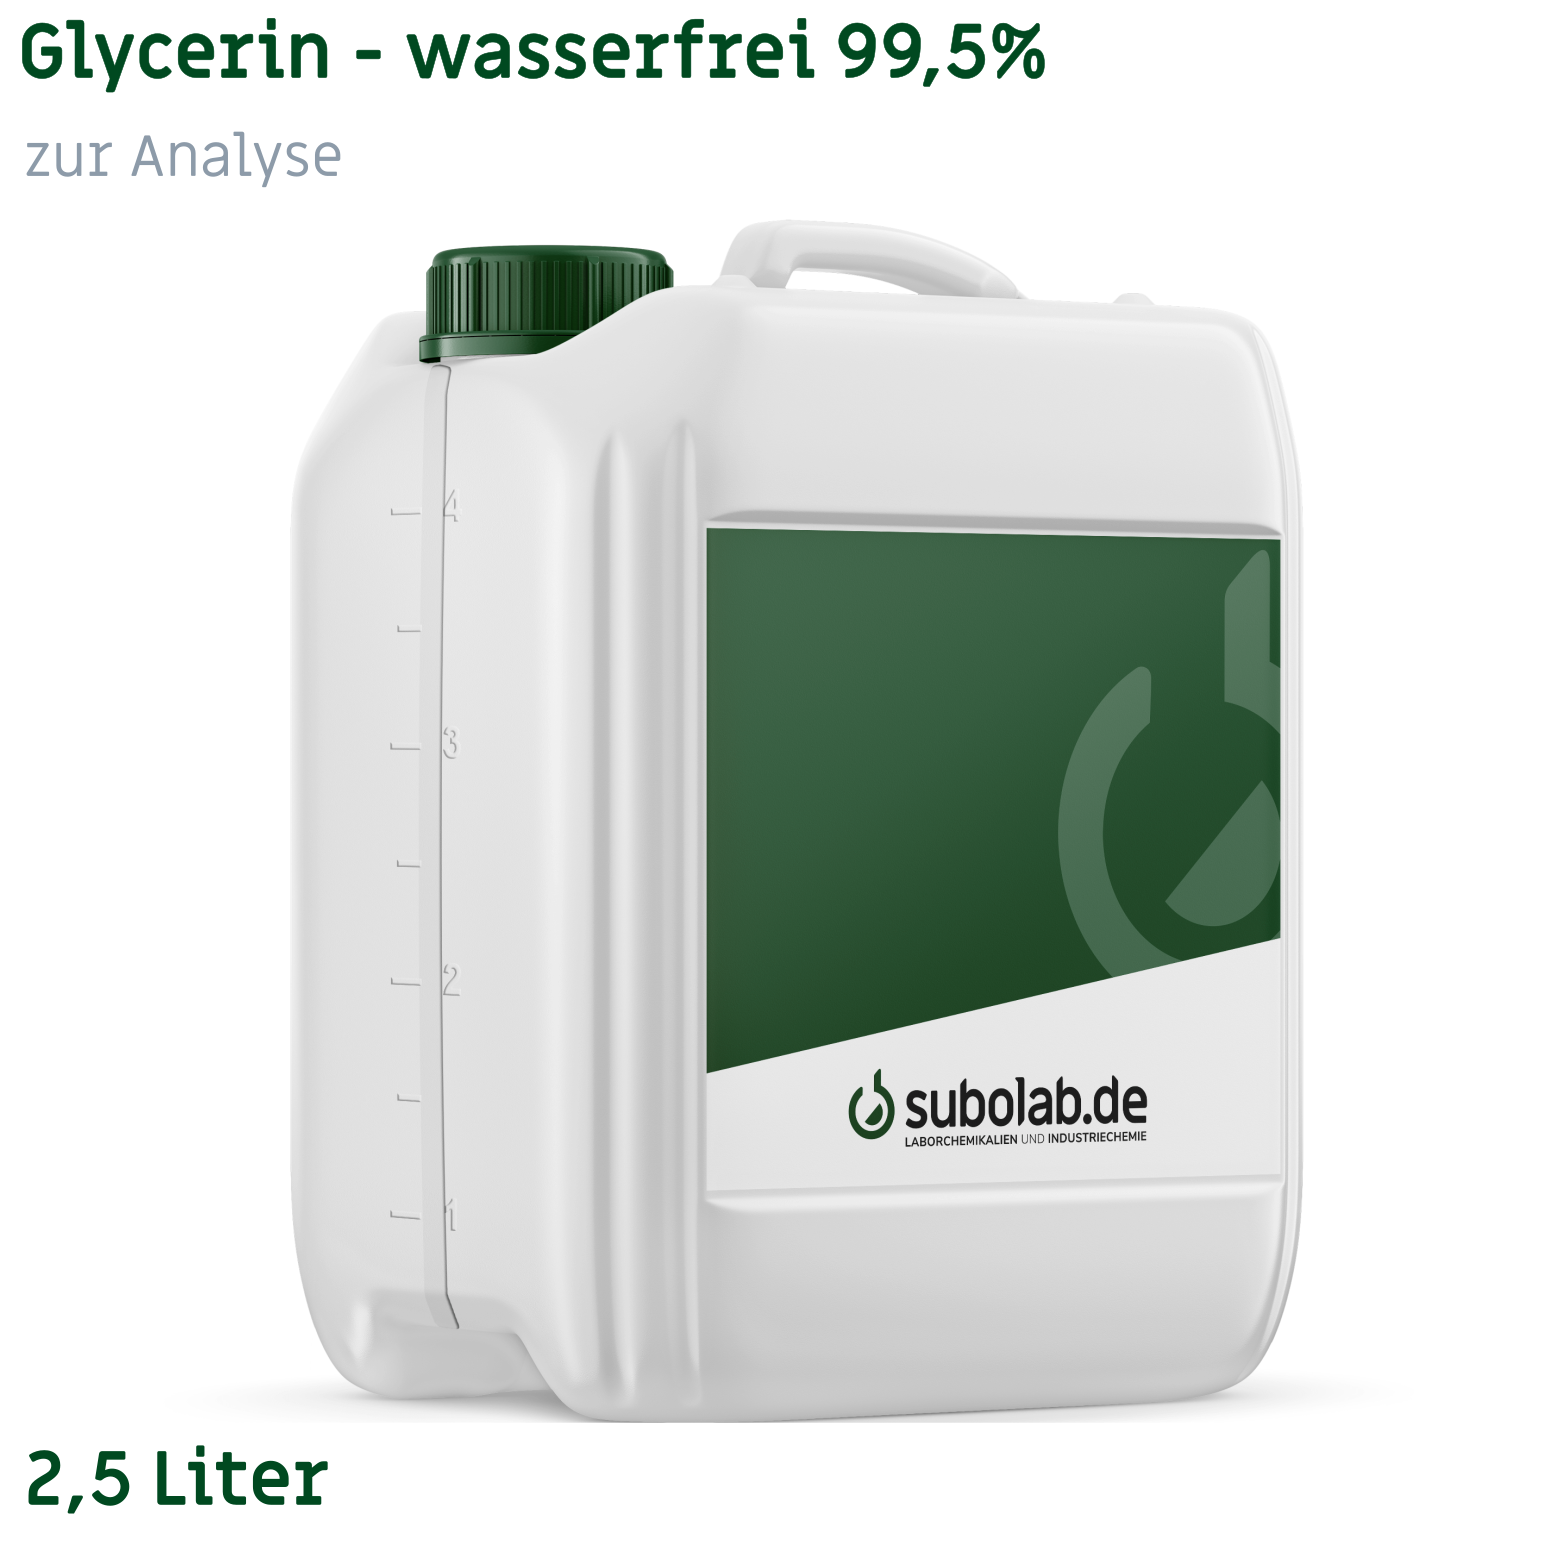 Bild von Glycerin - wasserfrei 99,5% zur Analyse (2,5 Liter)